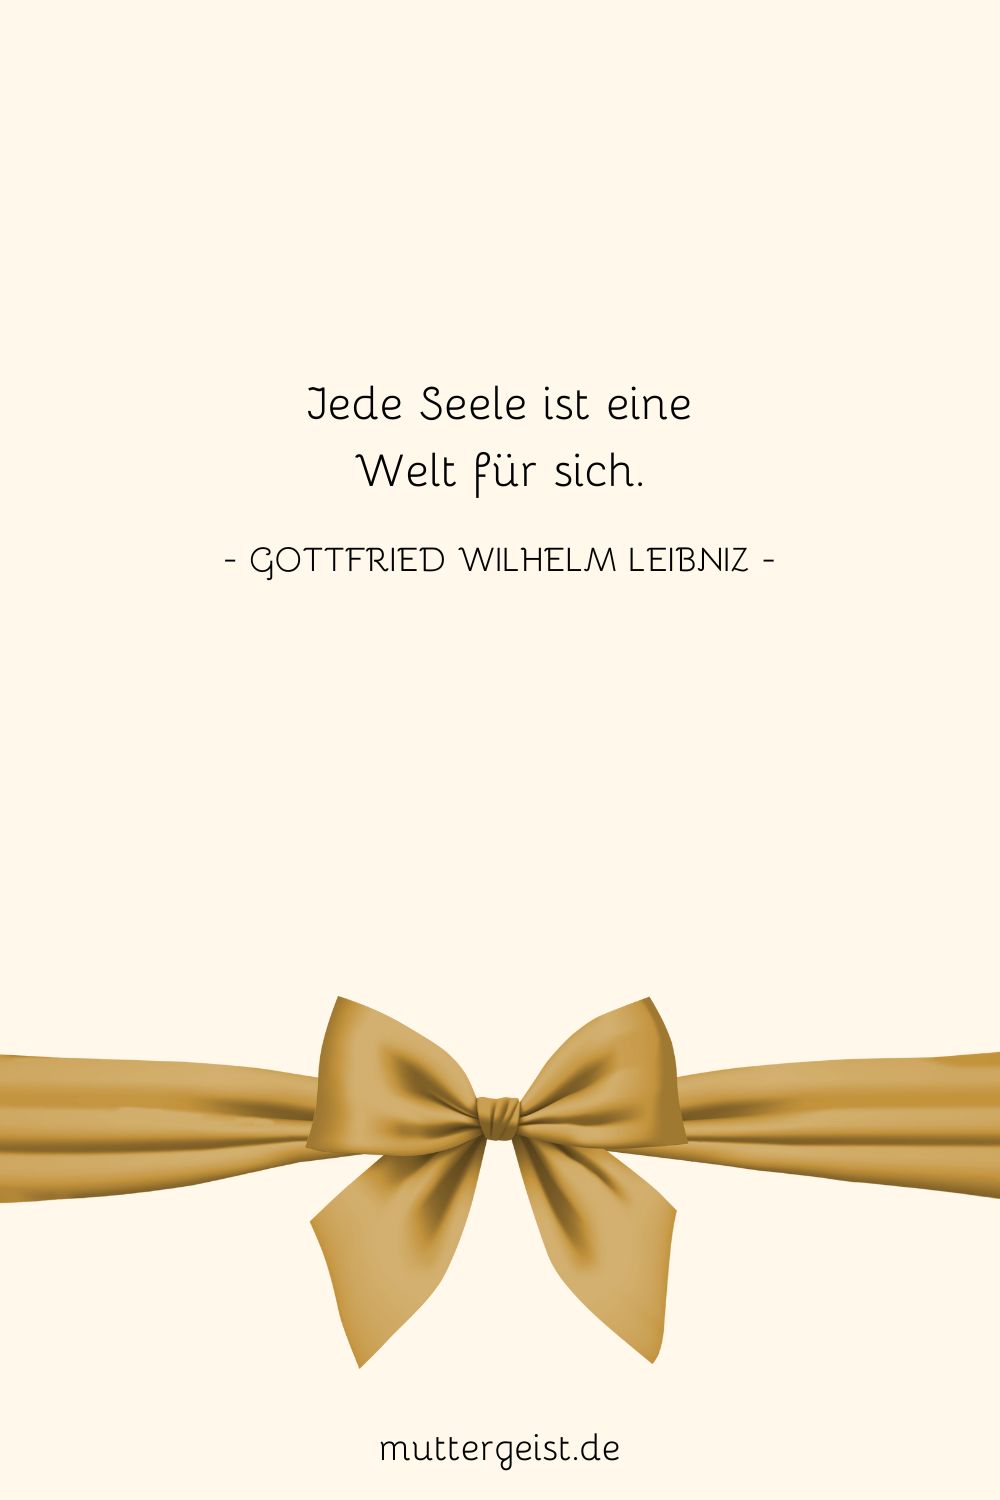 Gottfried Wilhelm Leibniz' Worte darüber, dass jede Seele eine Welt für sich ist